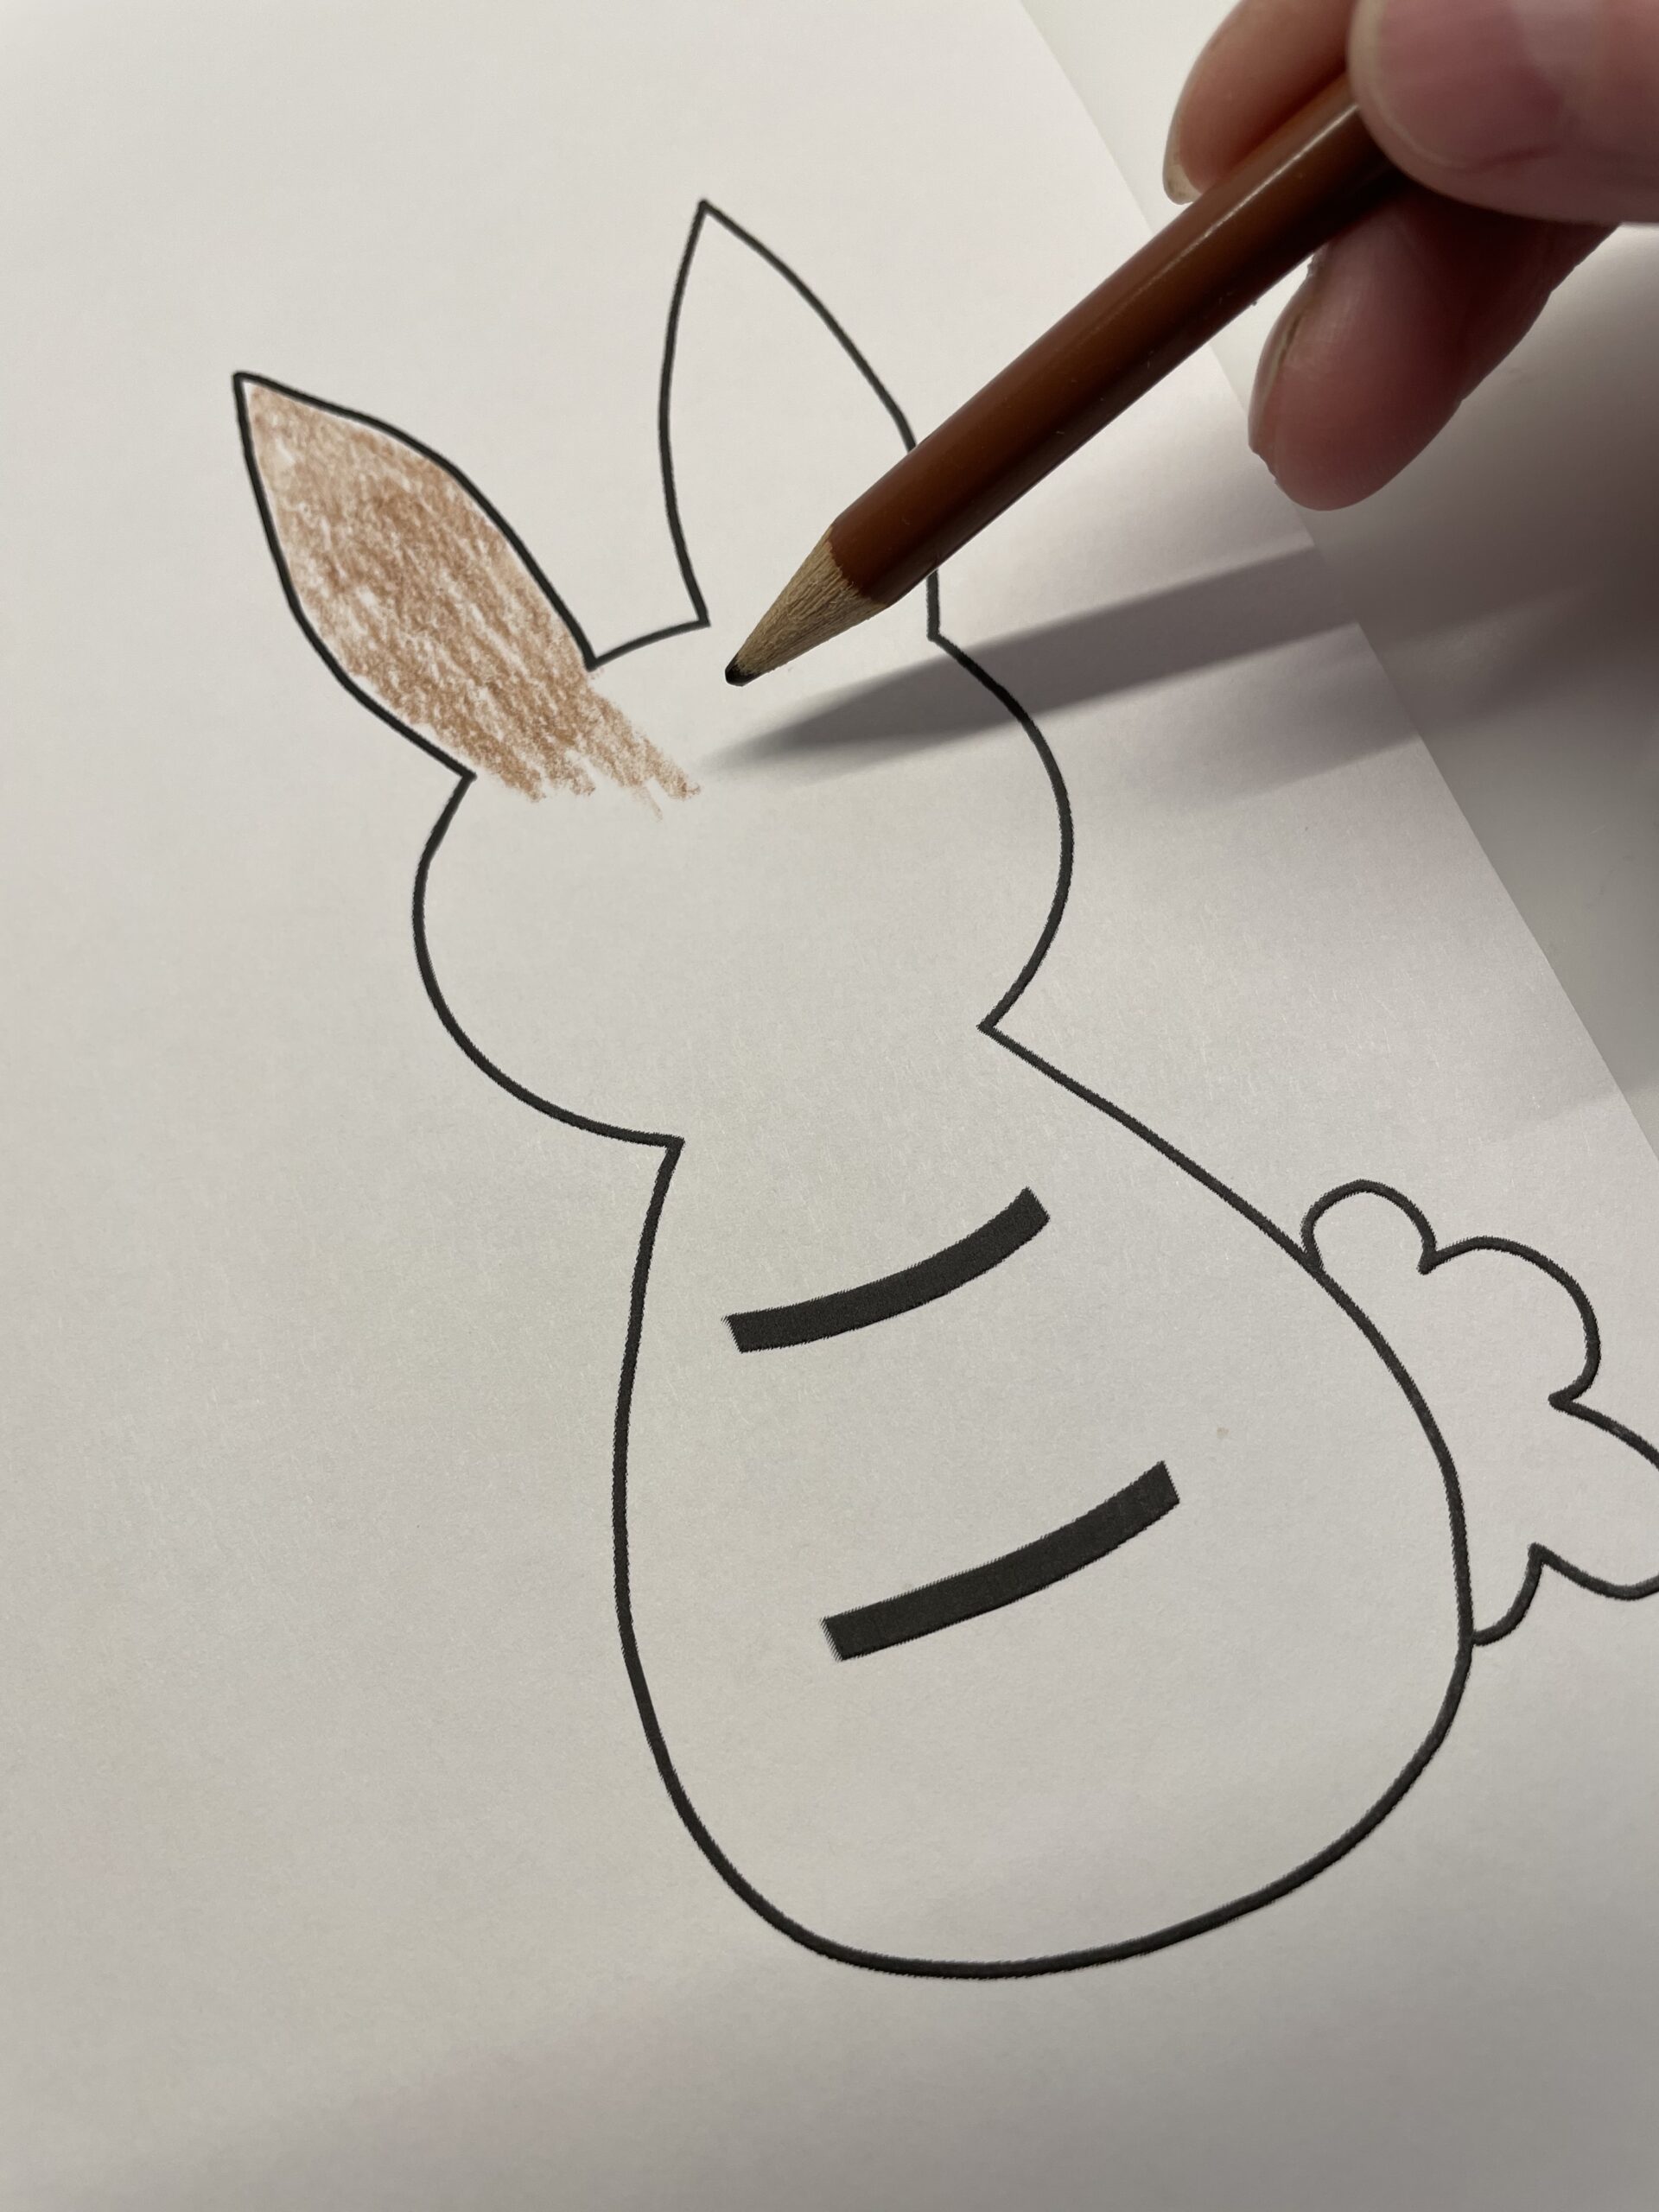 Bild zum Schritt 2 für das Bastel- und DIY-Abenteuer für Kinder: 'Dann malt ihr den Hasen mit Bunt- oder Filzstiften aus....'